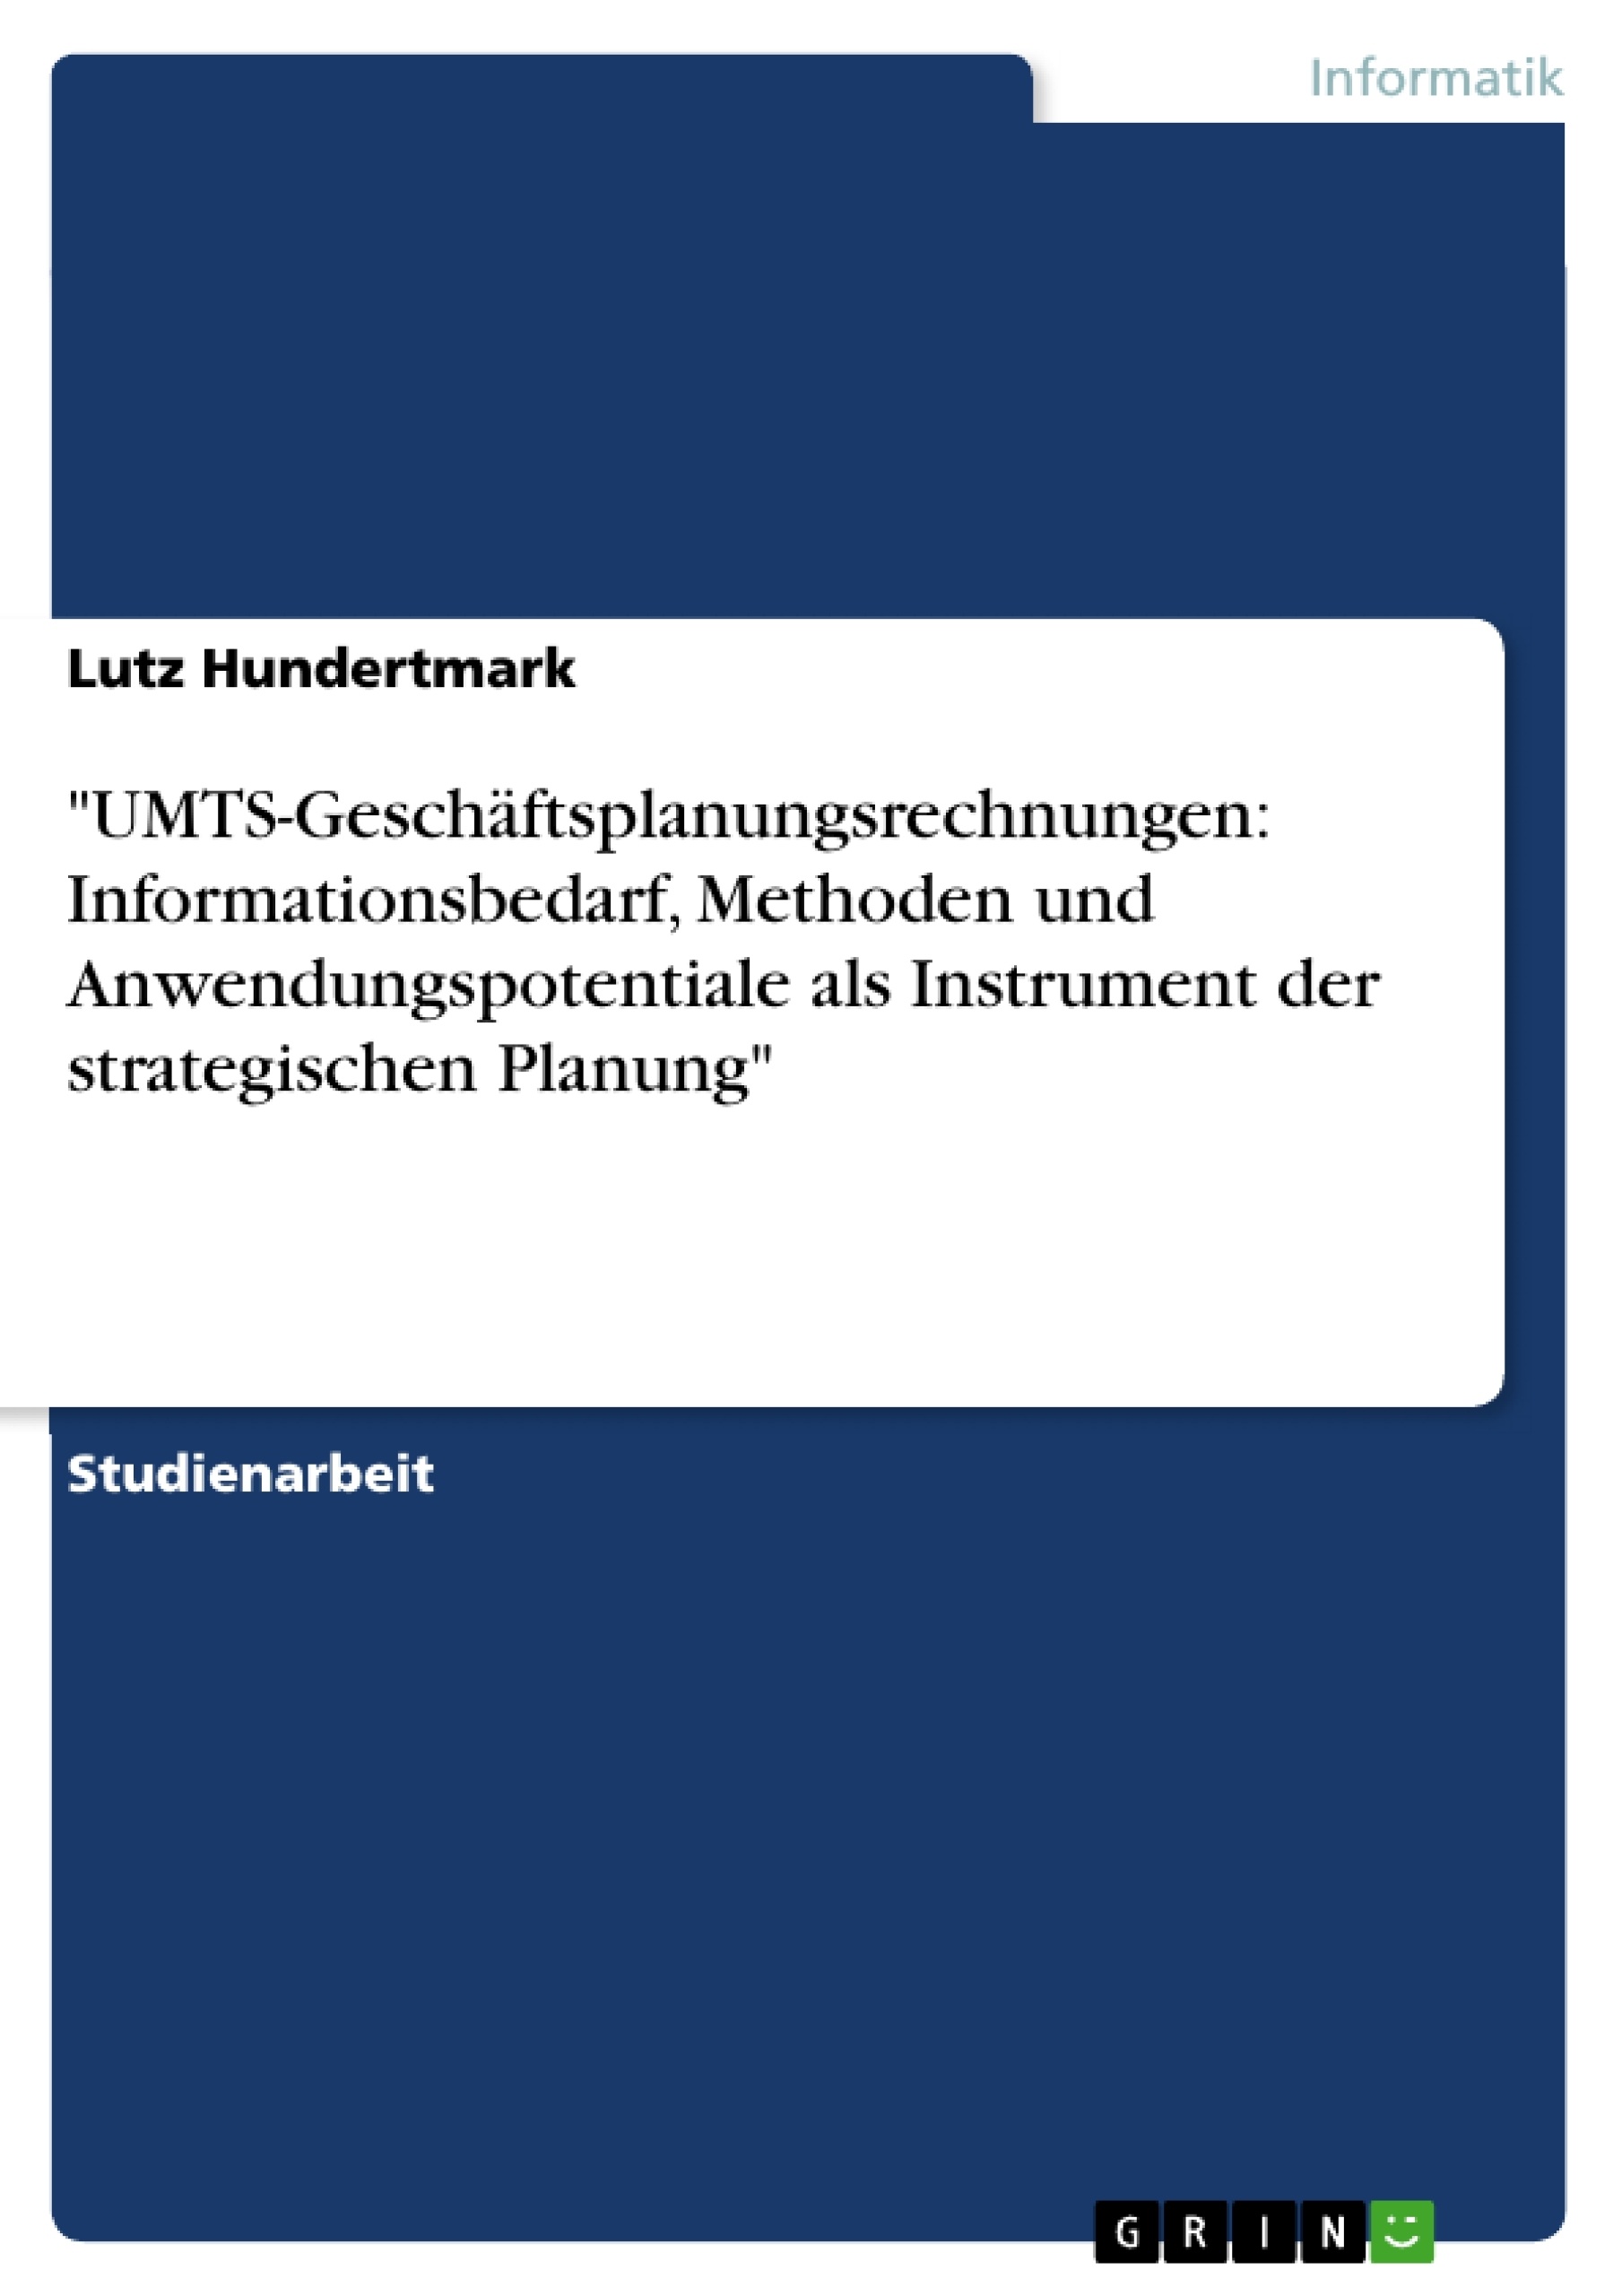 Title: "UMTS-Geschäftsplanungsrechnungen: Informationsbedarf, Methoden und Anwendungspotentiale als Instrument der strategischen Planung"